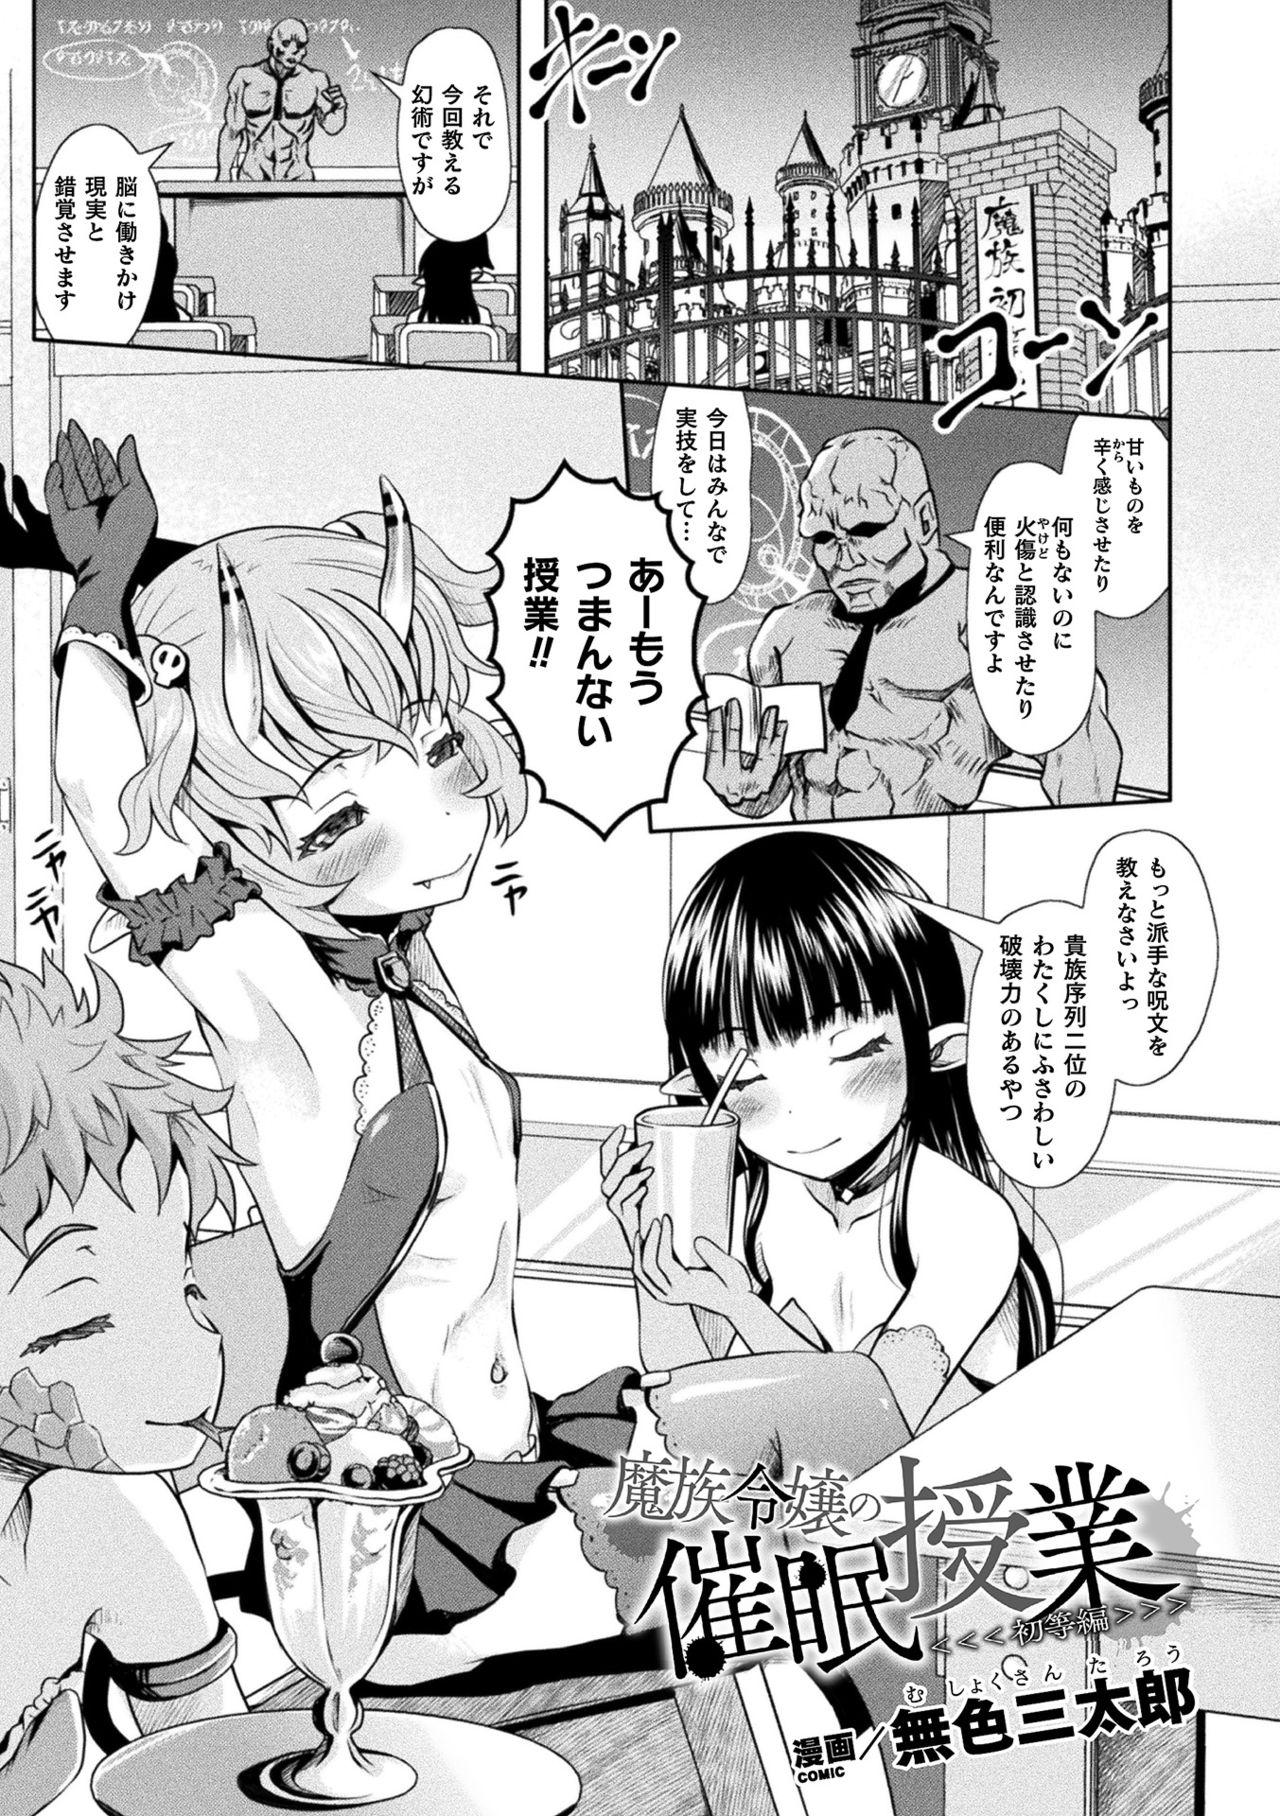 Teenfuns Nijigen komikku magajin mesugaki saimin seisai etchi! Vol. 1 Teen Blowjob - Page 3